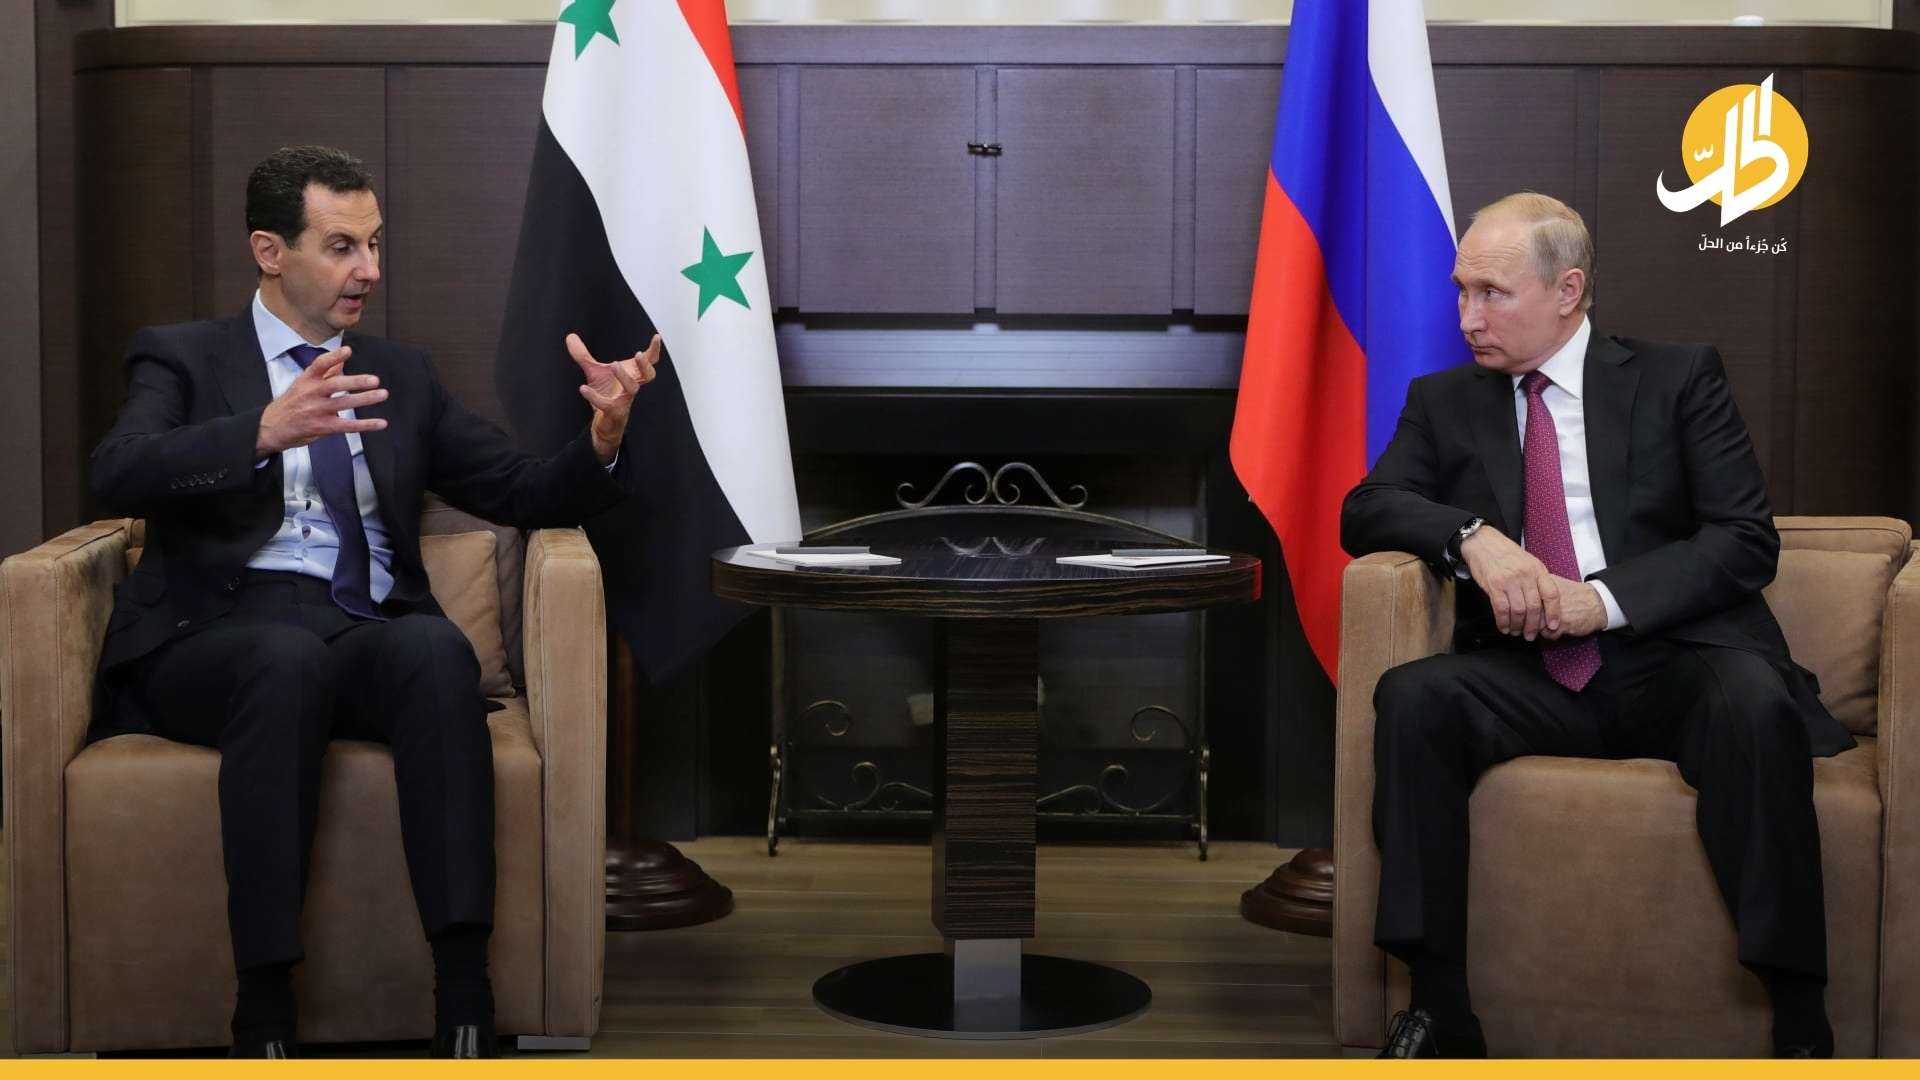 بعد قمة “بايدن” و”بوتين”.. روسيا تُحذّر “الأسد” من خياراتٍ غير متوقّعة